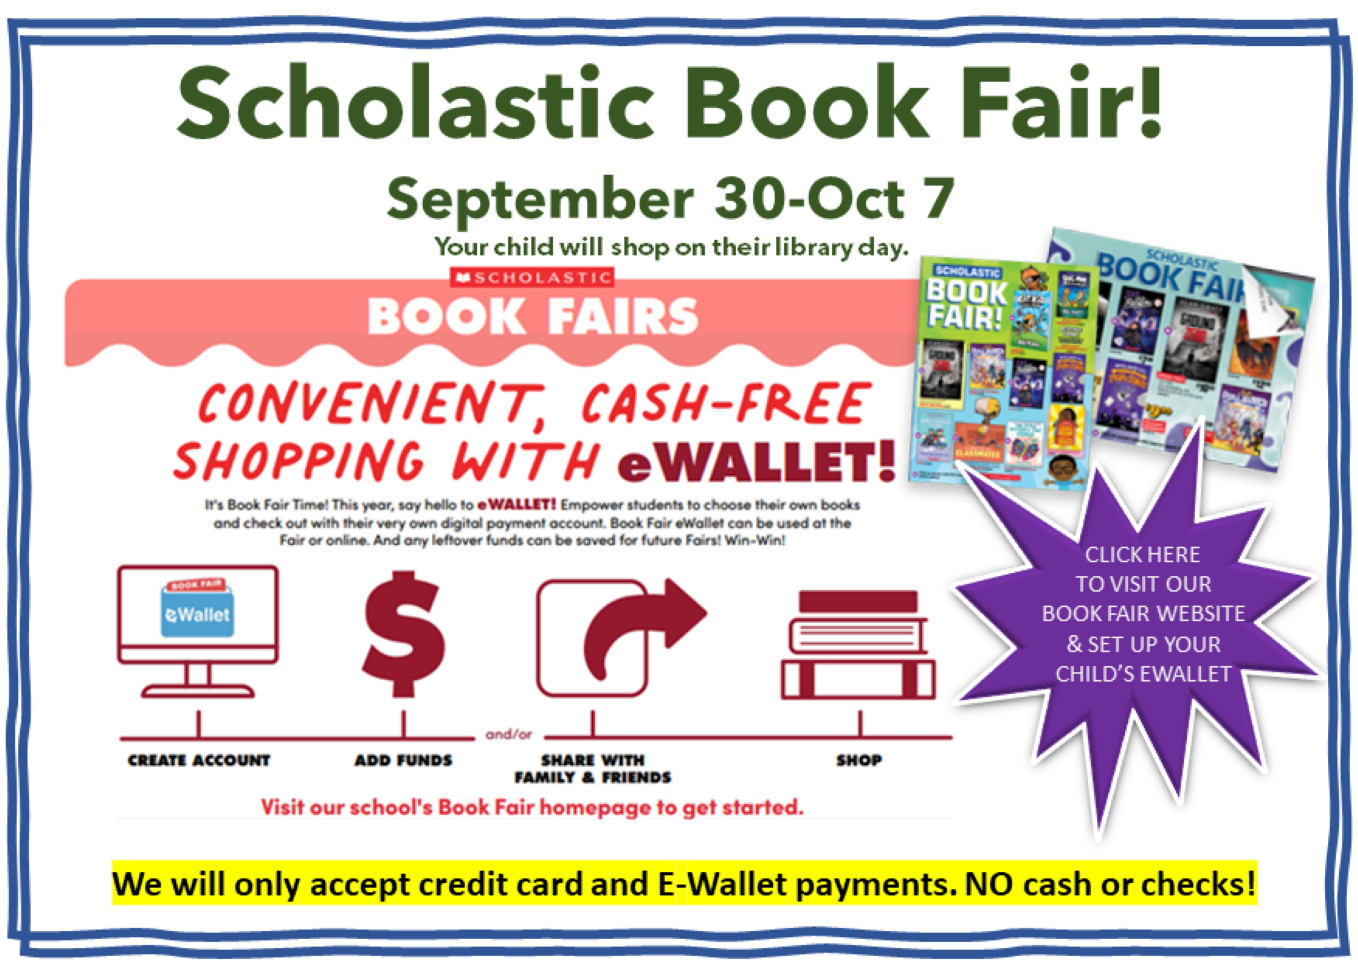 Scholastic Book Fair Website